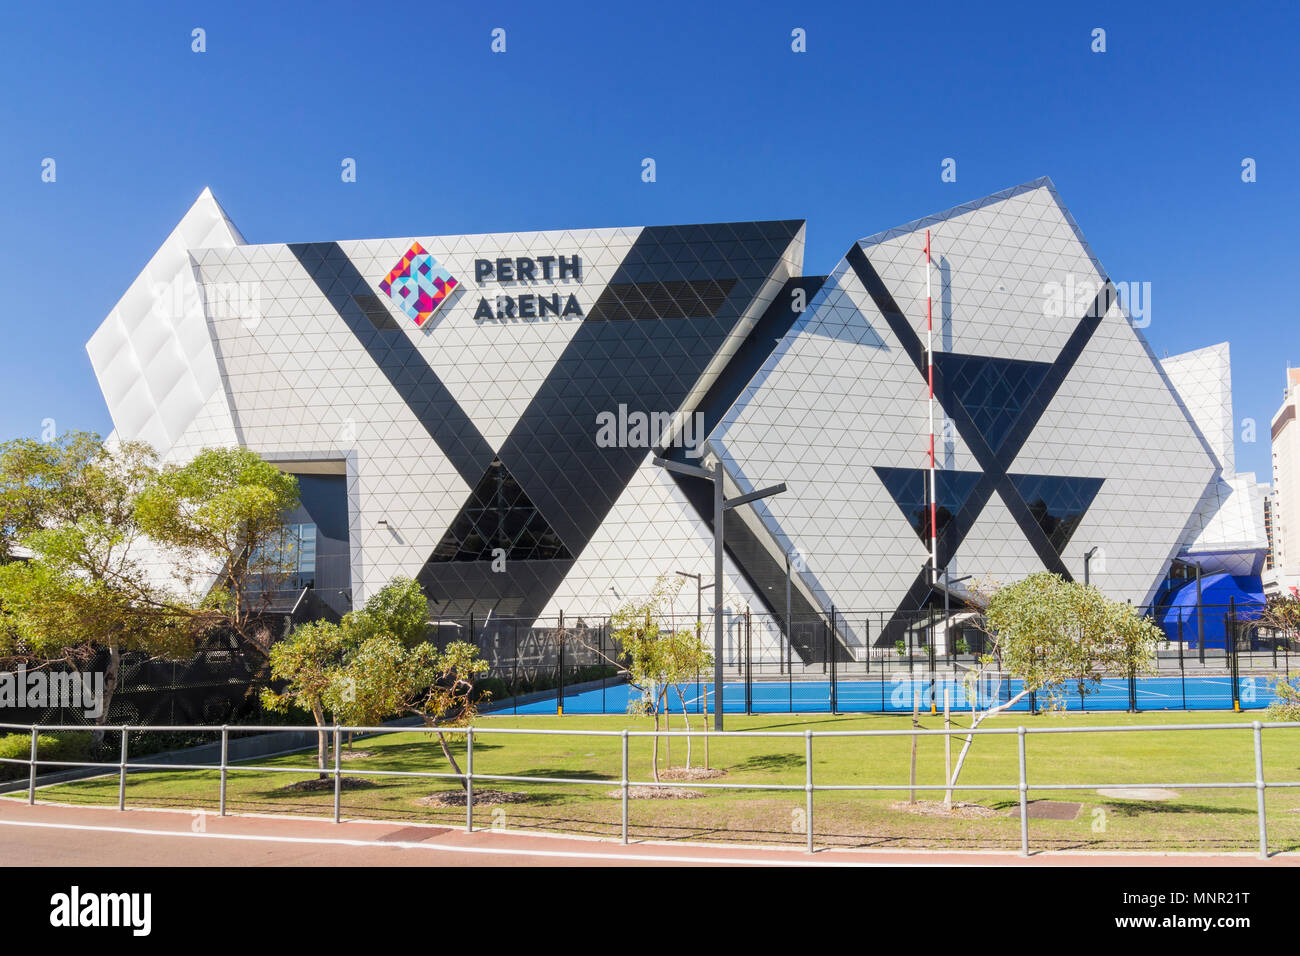 Facciata est di Perth Arena il disegno essendo influenzato dall'eternità puzzle, Wellington St, Perth, Australia occidentale, Australia Foto Stock